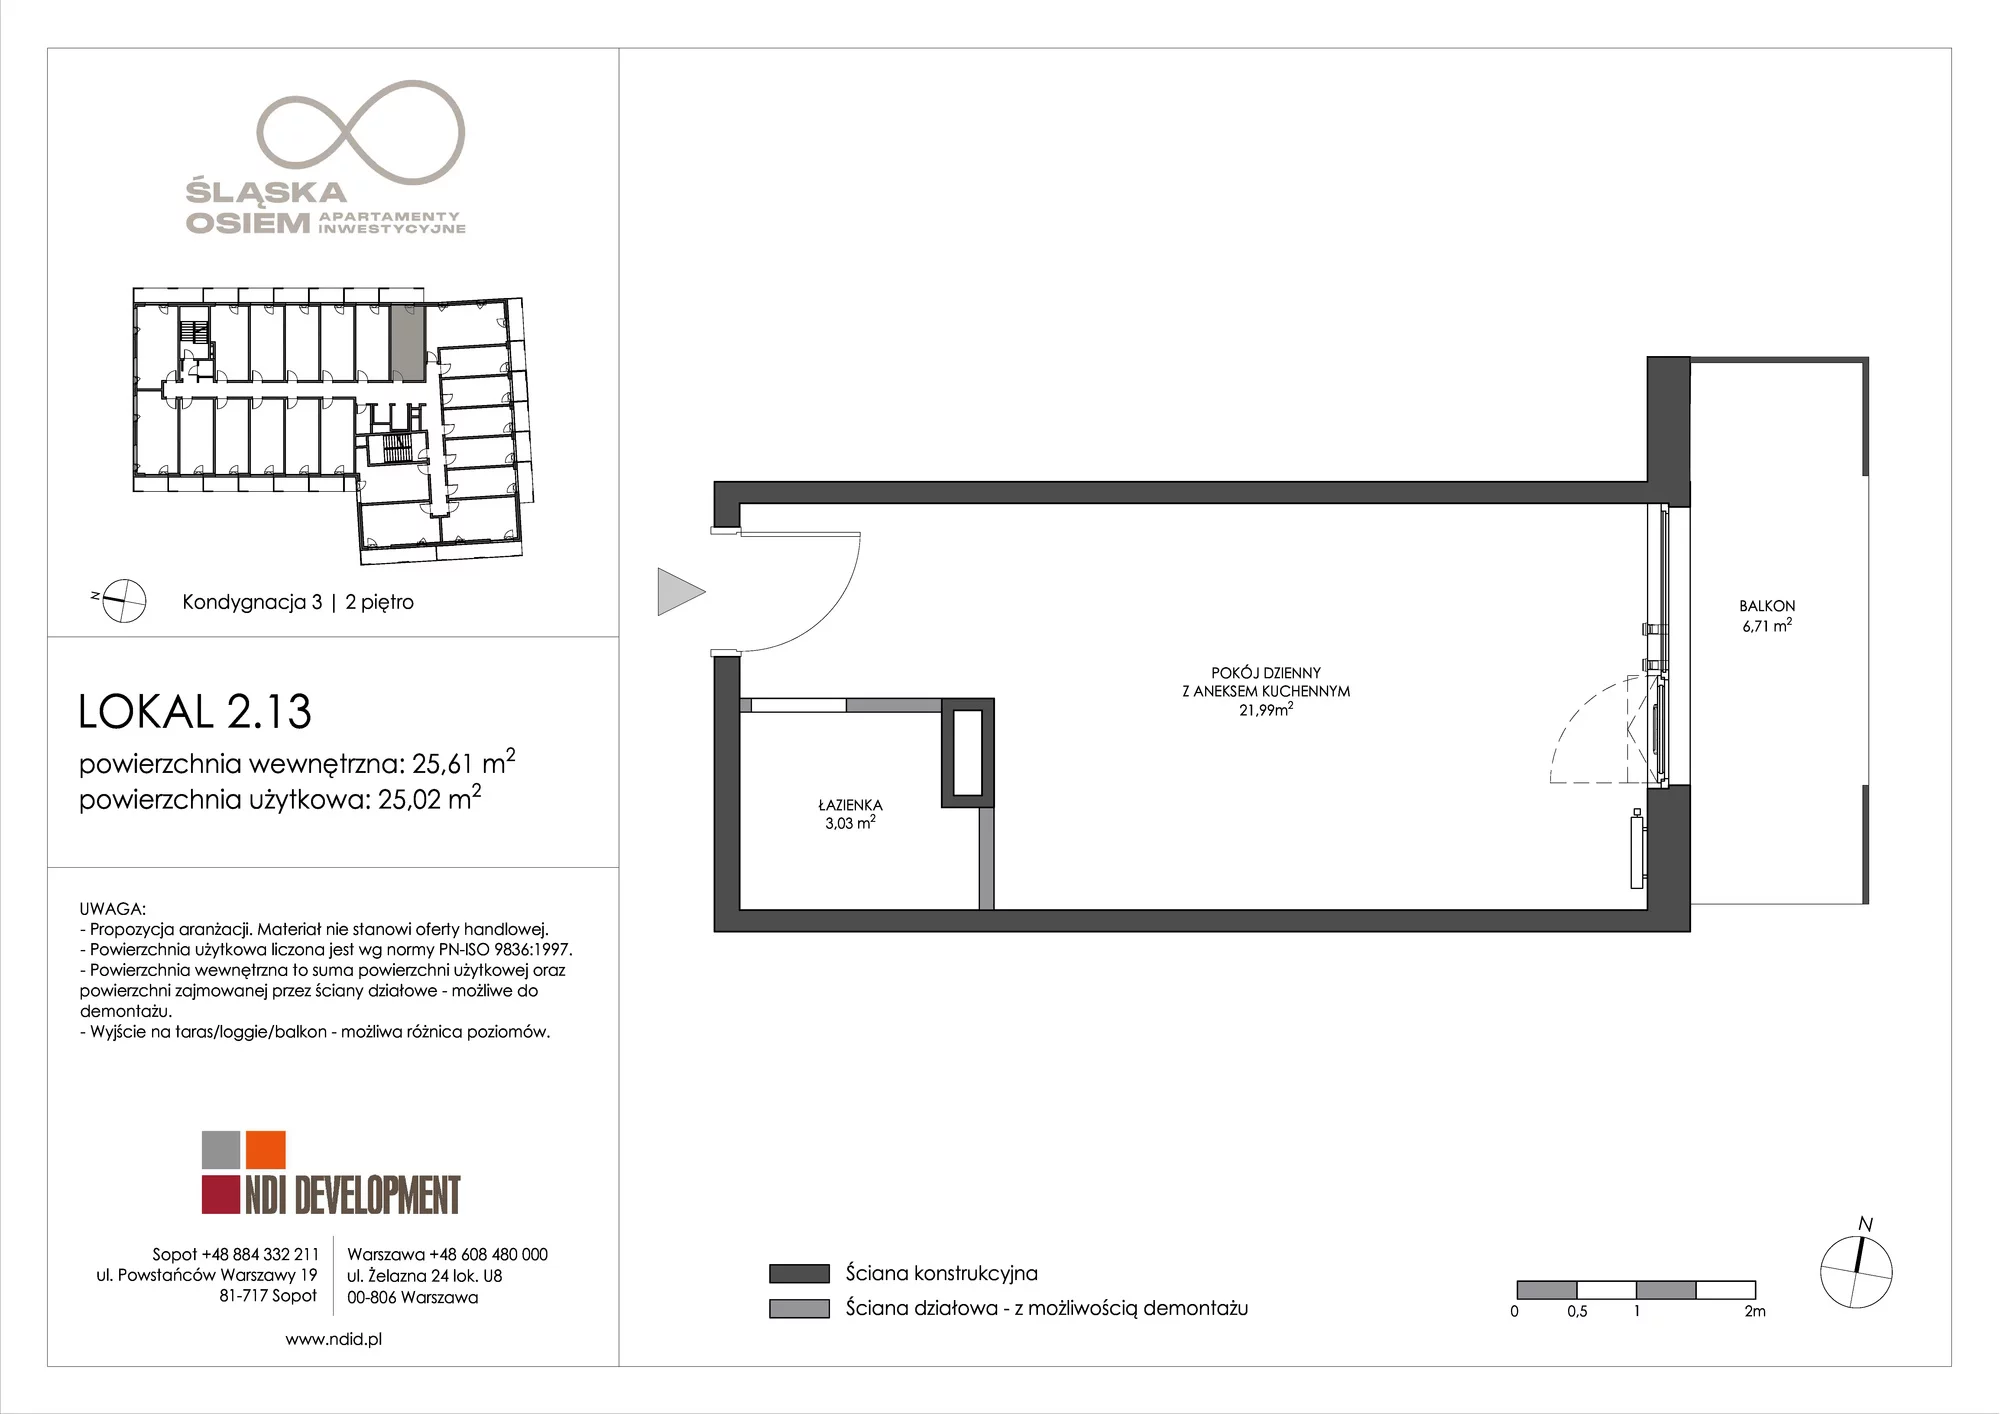 Apartament inwestycyjny 25,61 m², piętro 2, oferta nr 2.13, Śląska Osiem, Gdańsk, Przymorze, ul. Śląska 8